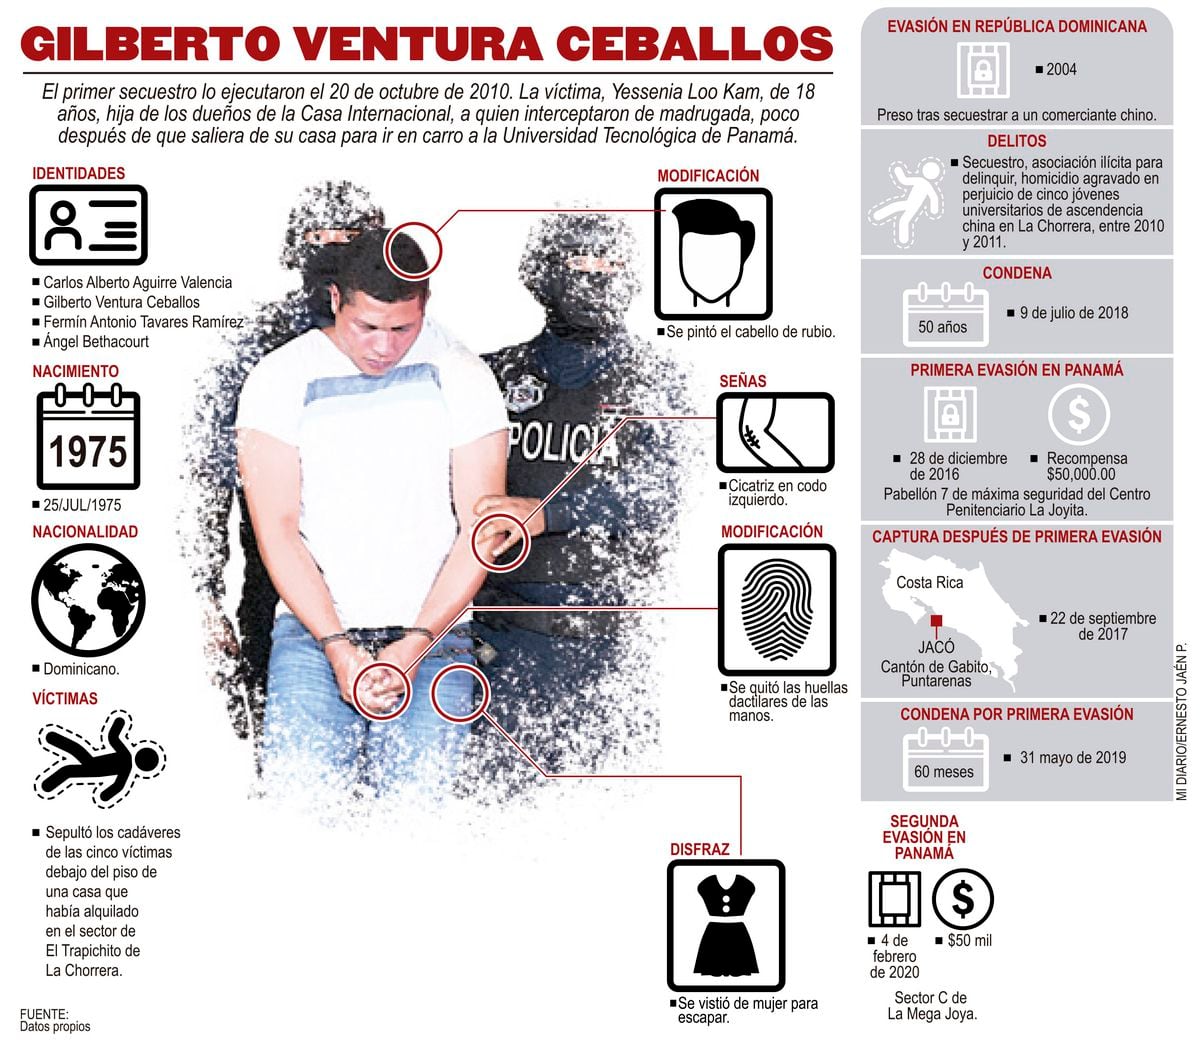 Revelamos los cambios físicos de Ventura Ceballos desde que inició sus fechorías en Panamá